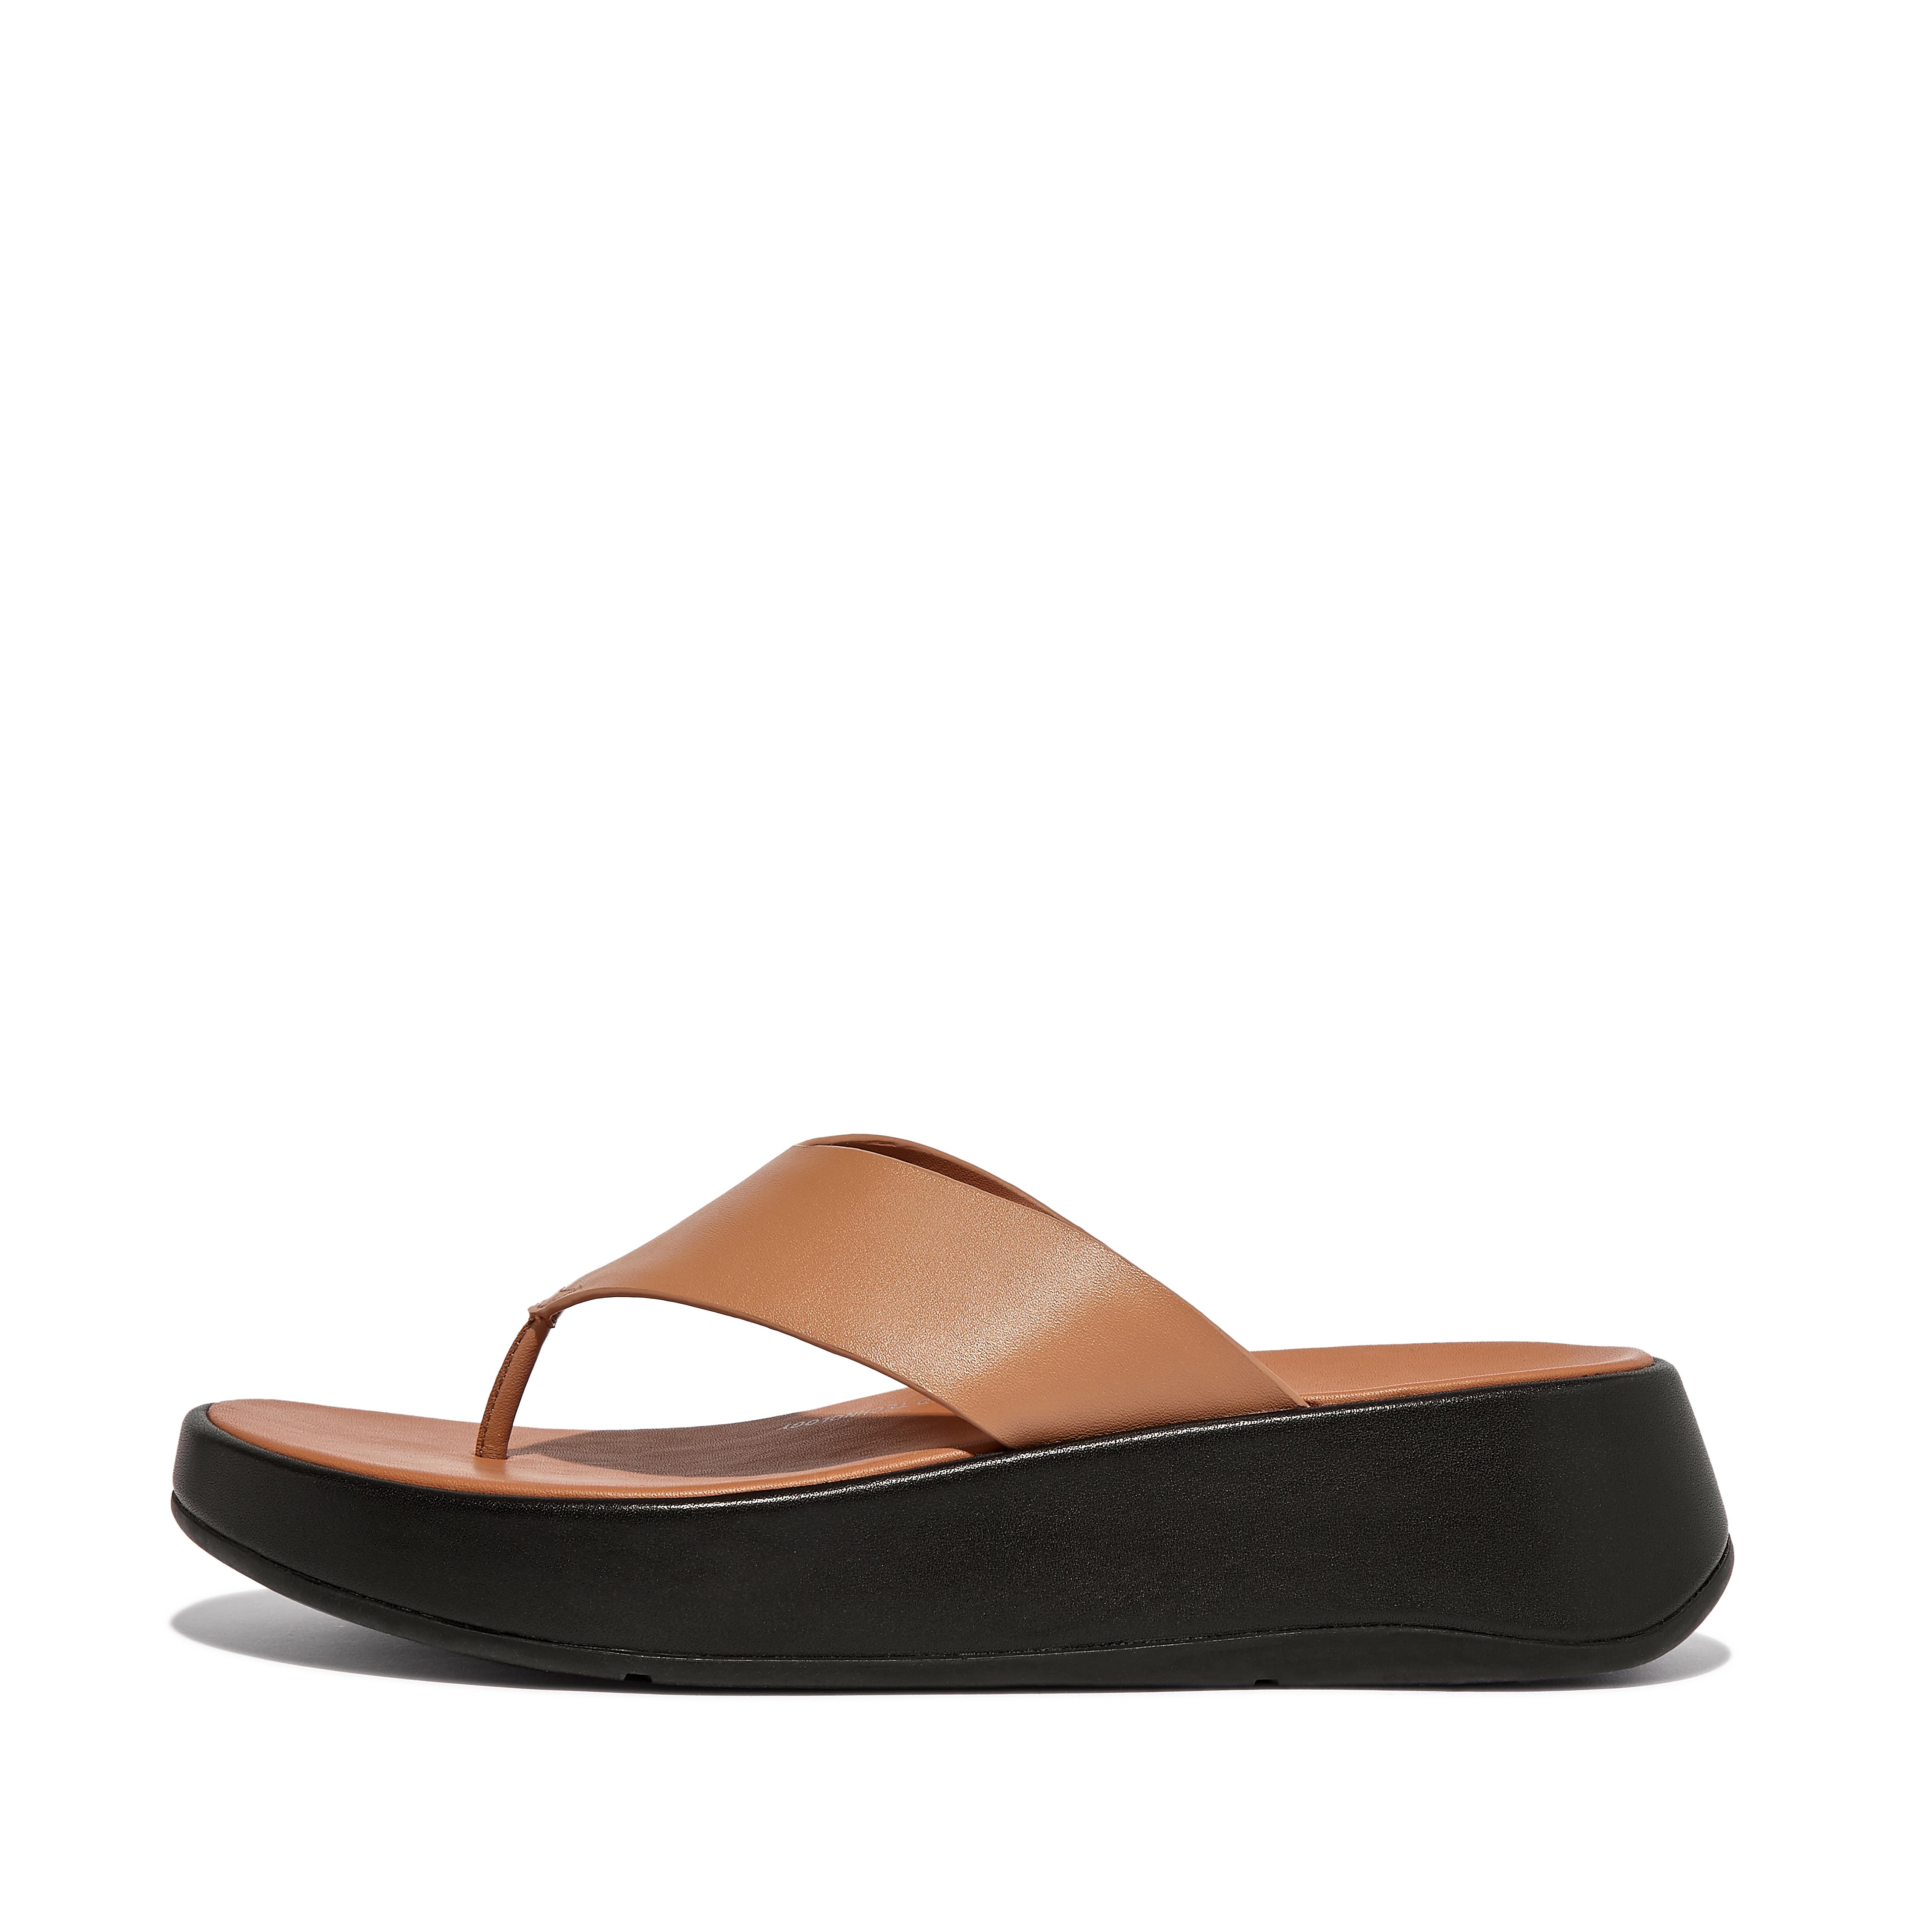 핏플랍 샌들 Fitflop Luxe Leather Flatform Toe-Post Sandals,Latte Tan